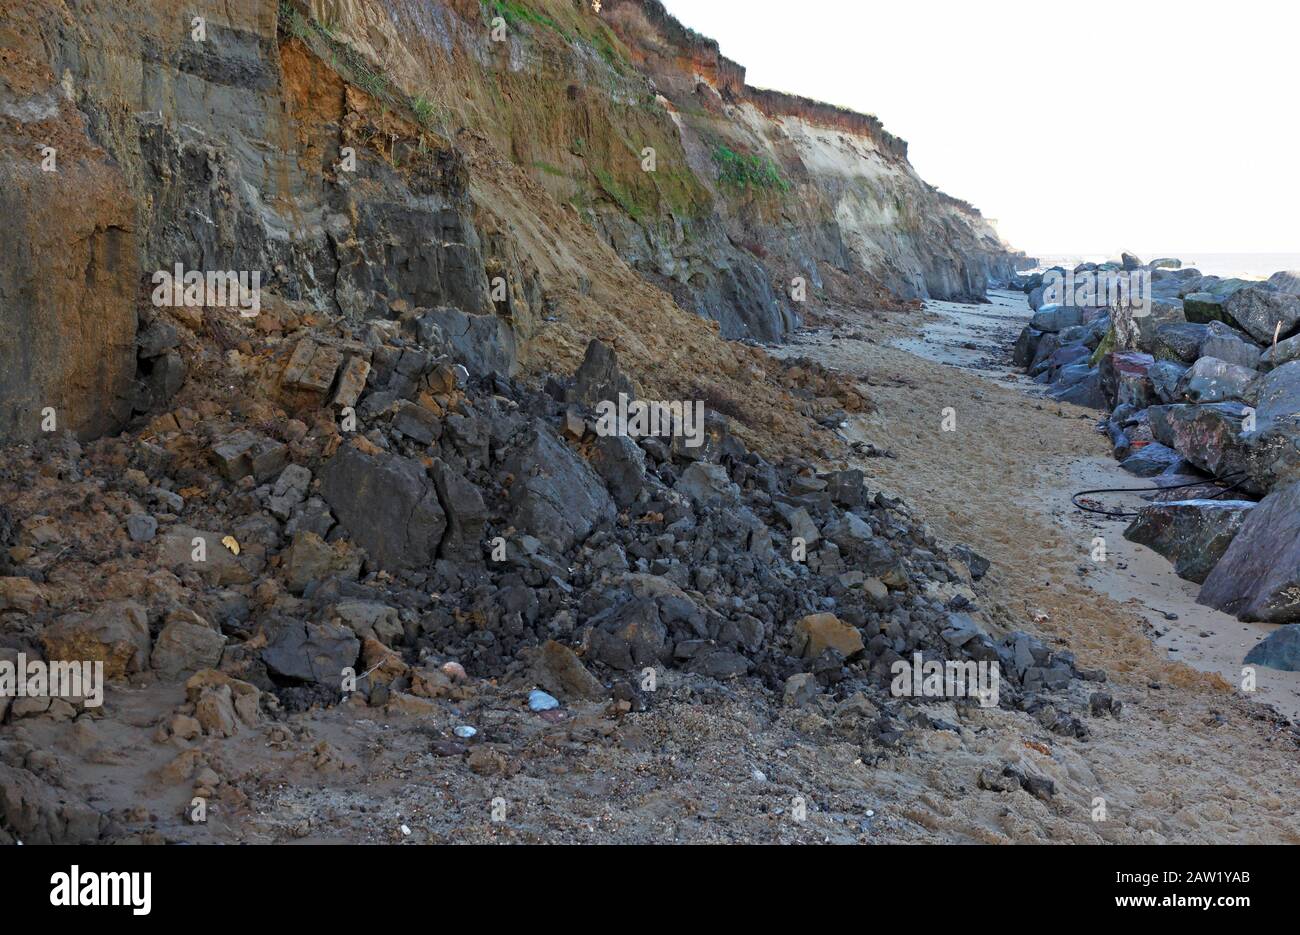 Frane da scogliere composte principalmente di sedimenti glaciali e soggetti a erosione costiera a Happisburgh, Norfolk, Inghilterra, Regno Unito, Europa. Foto Stock